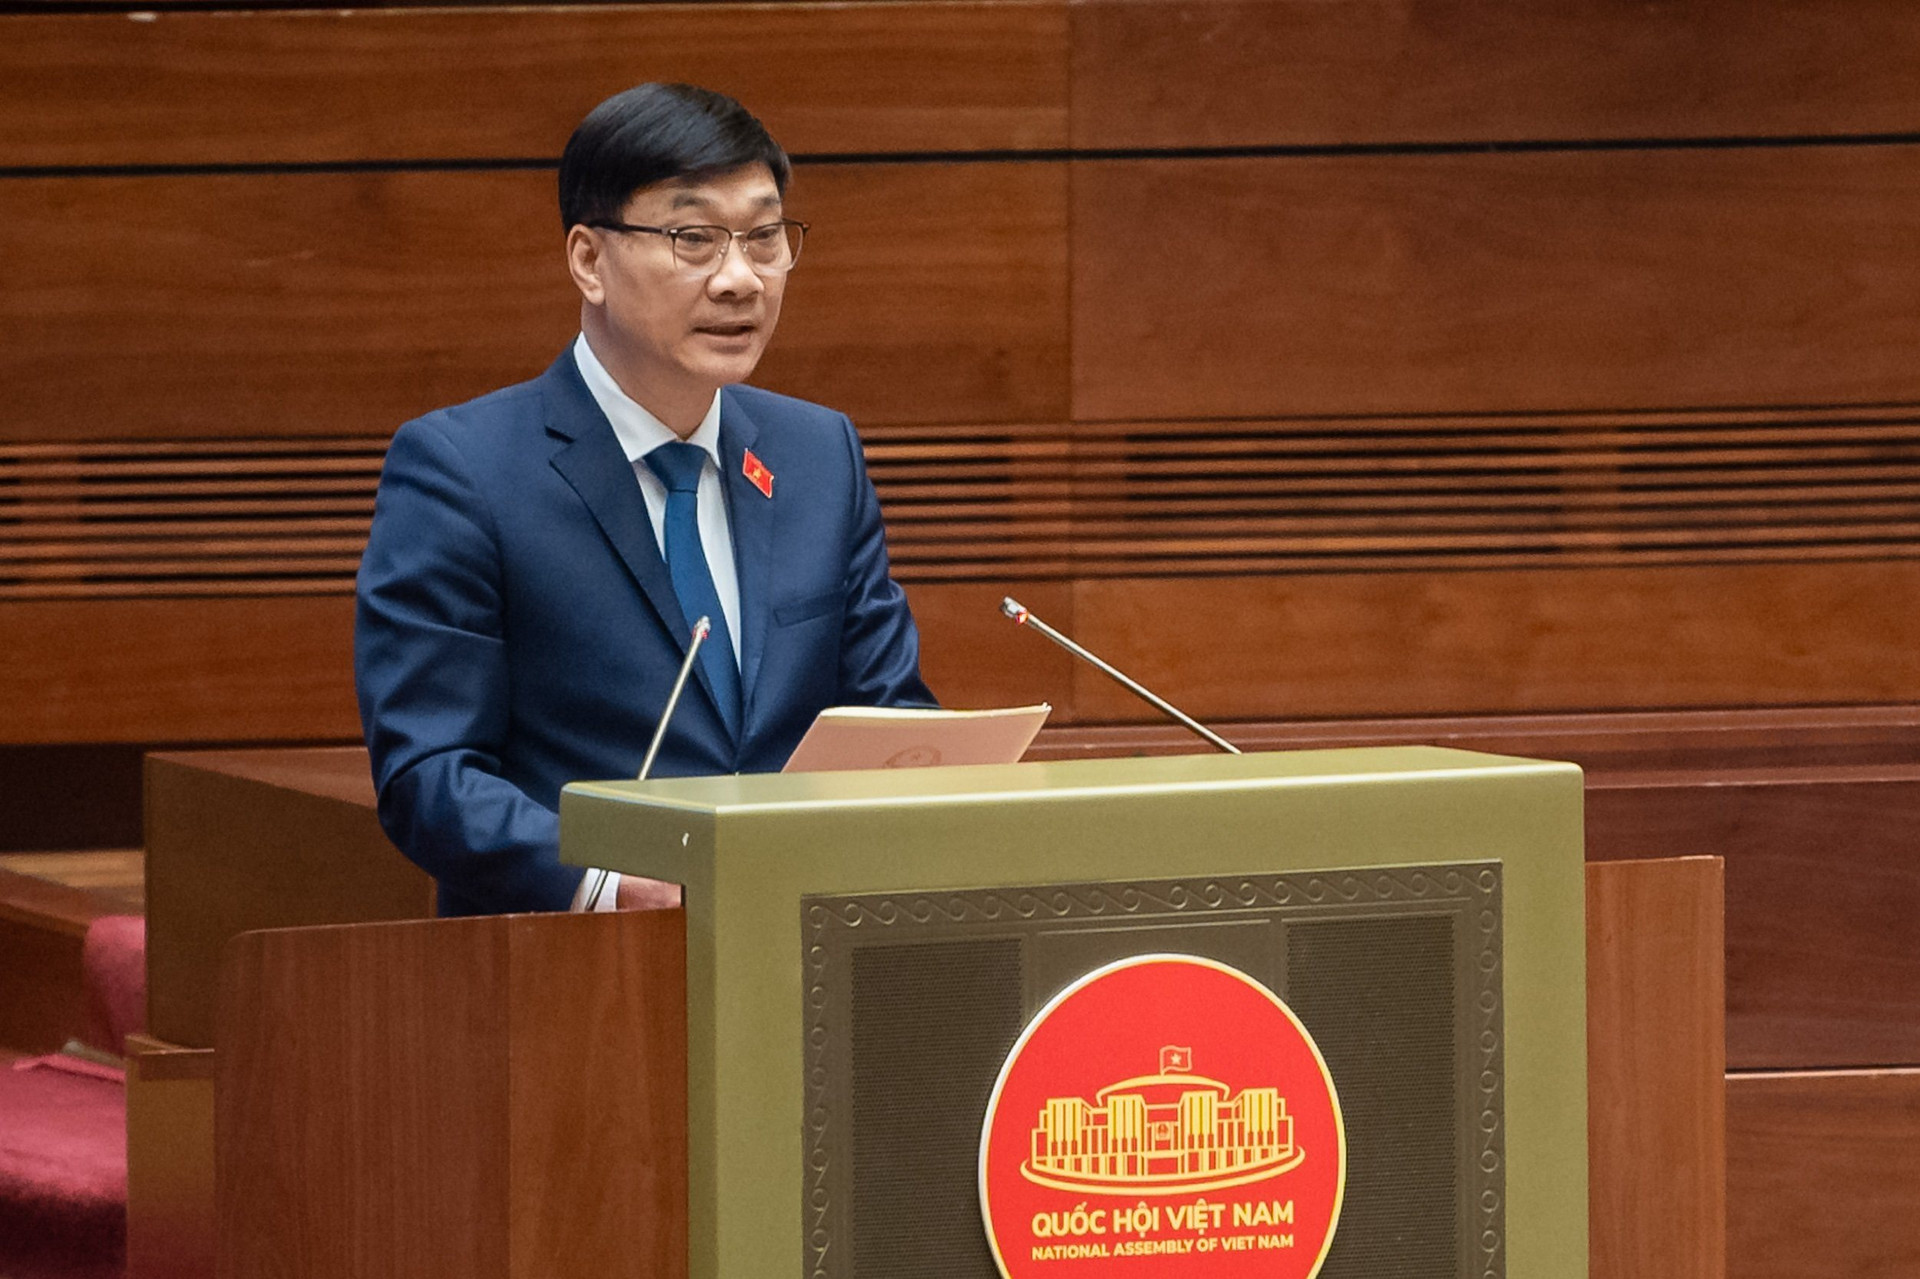 Chủ nhiệm Ủy ban Kinh tế của Quốc hội Vũ Hồng Thanh trình bày báo cáo tiếp thu, giải trình chỉnh lý dự thảo Luật Đất đai sửa đổi.